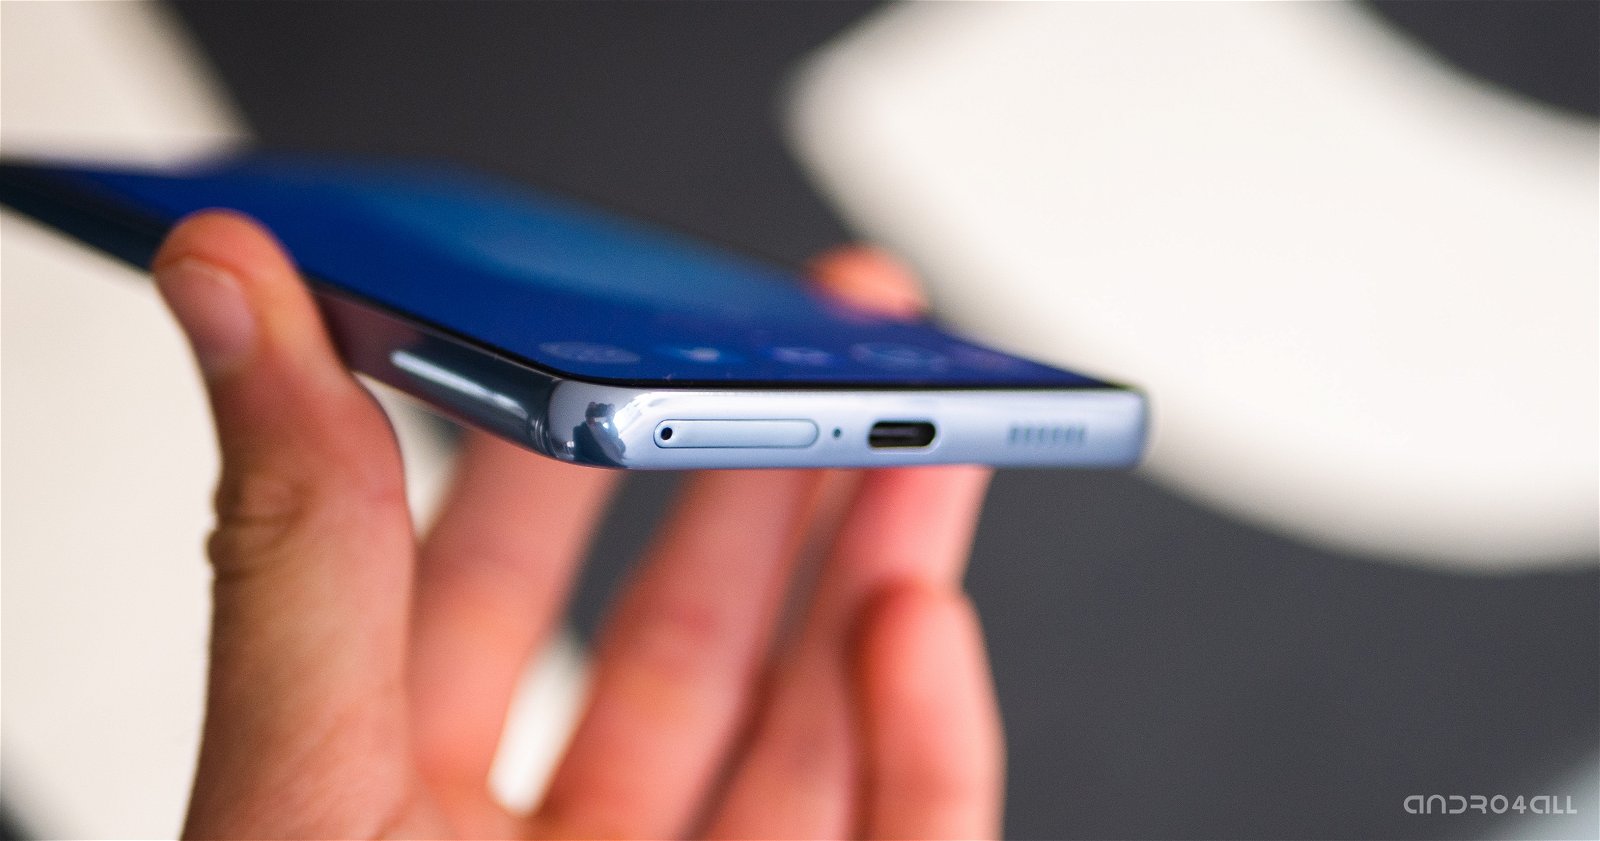 Samsung Galaxy A53 5G: características, ficha técnica y precio